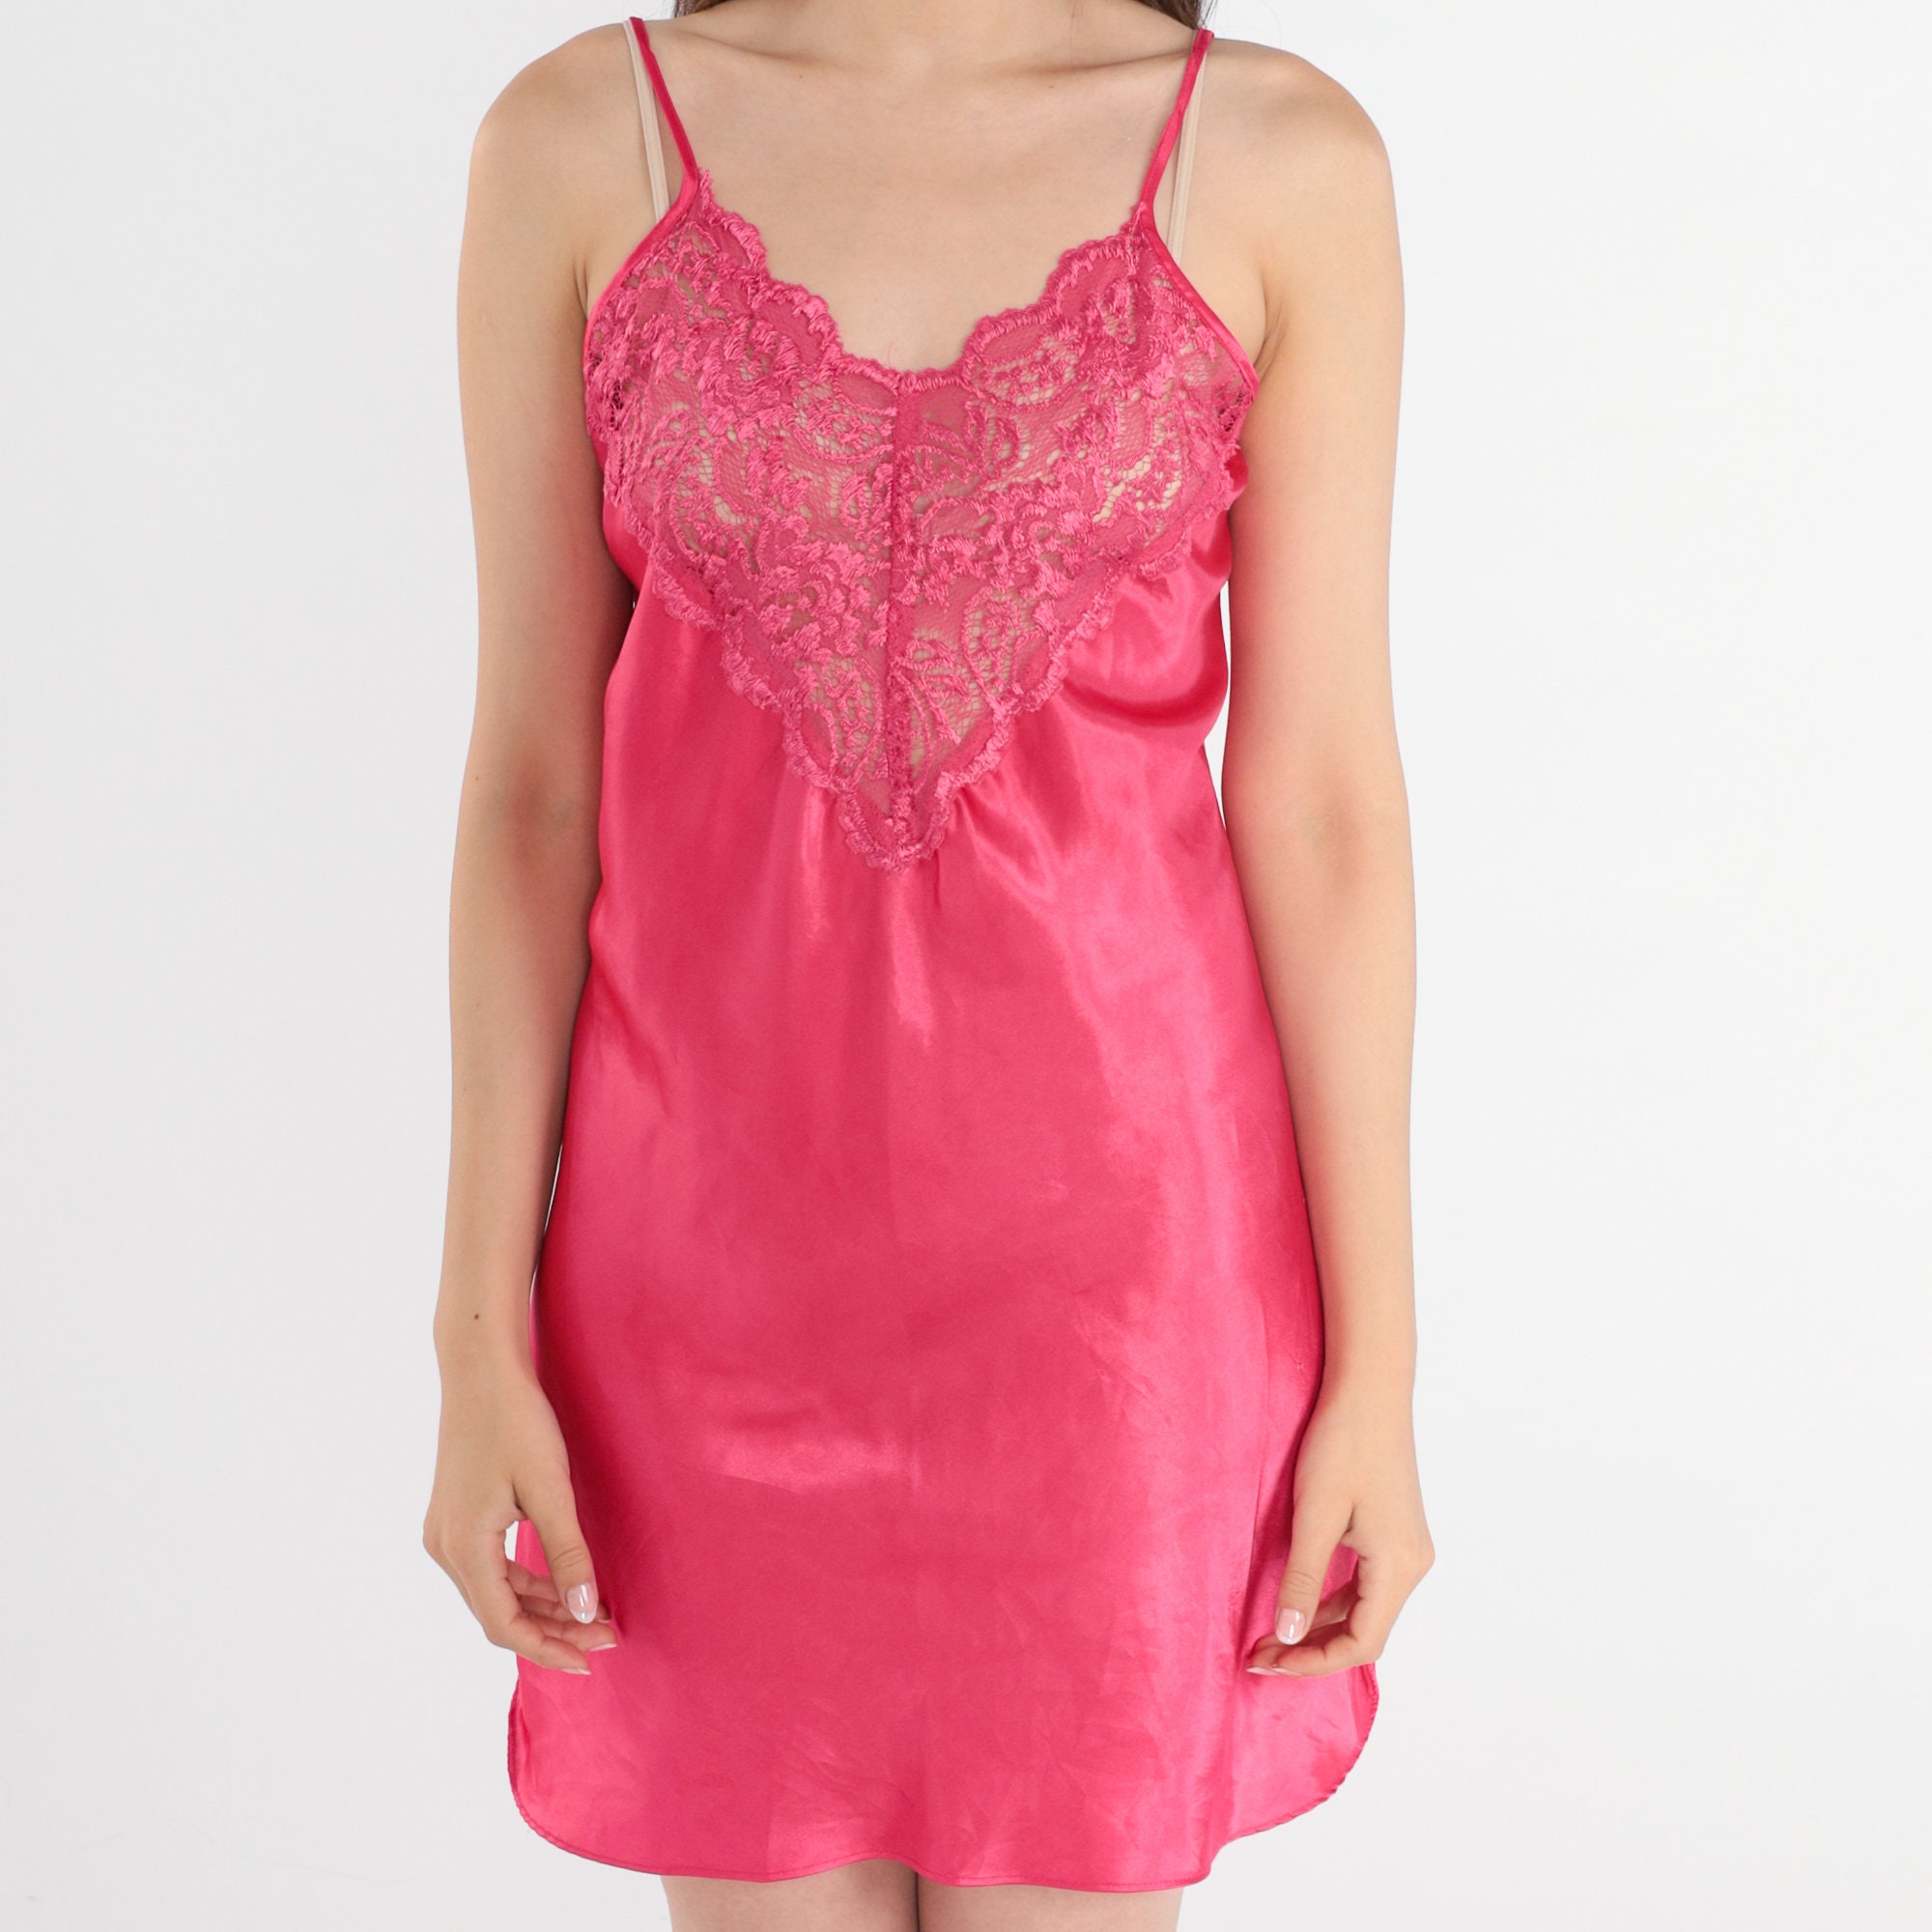 Pink Satin Slip Dress 90s Lingerie Mini Dress Retro Sheer Lace ...